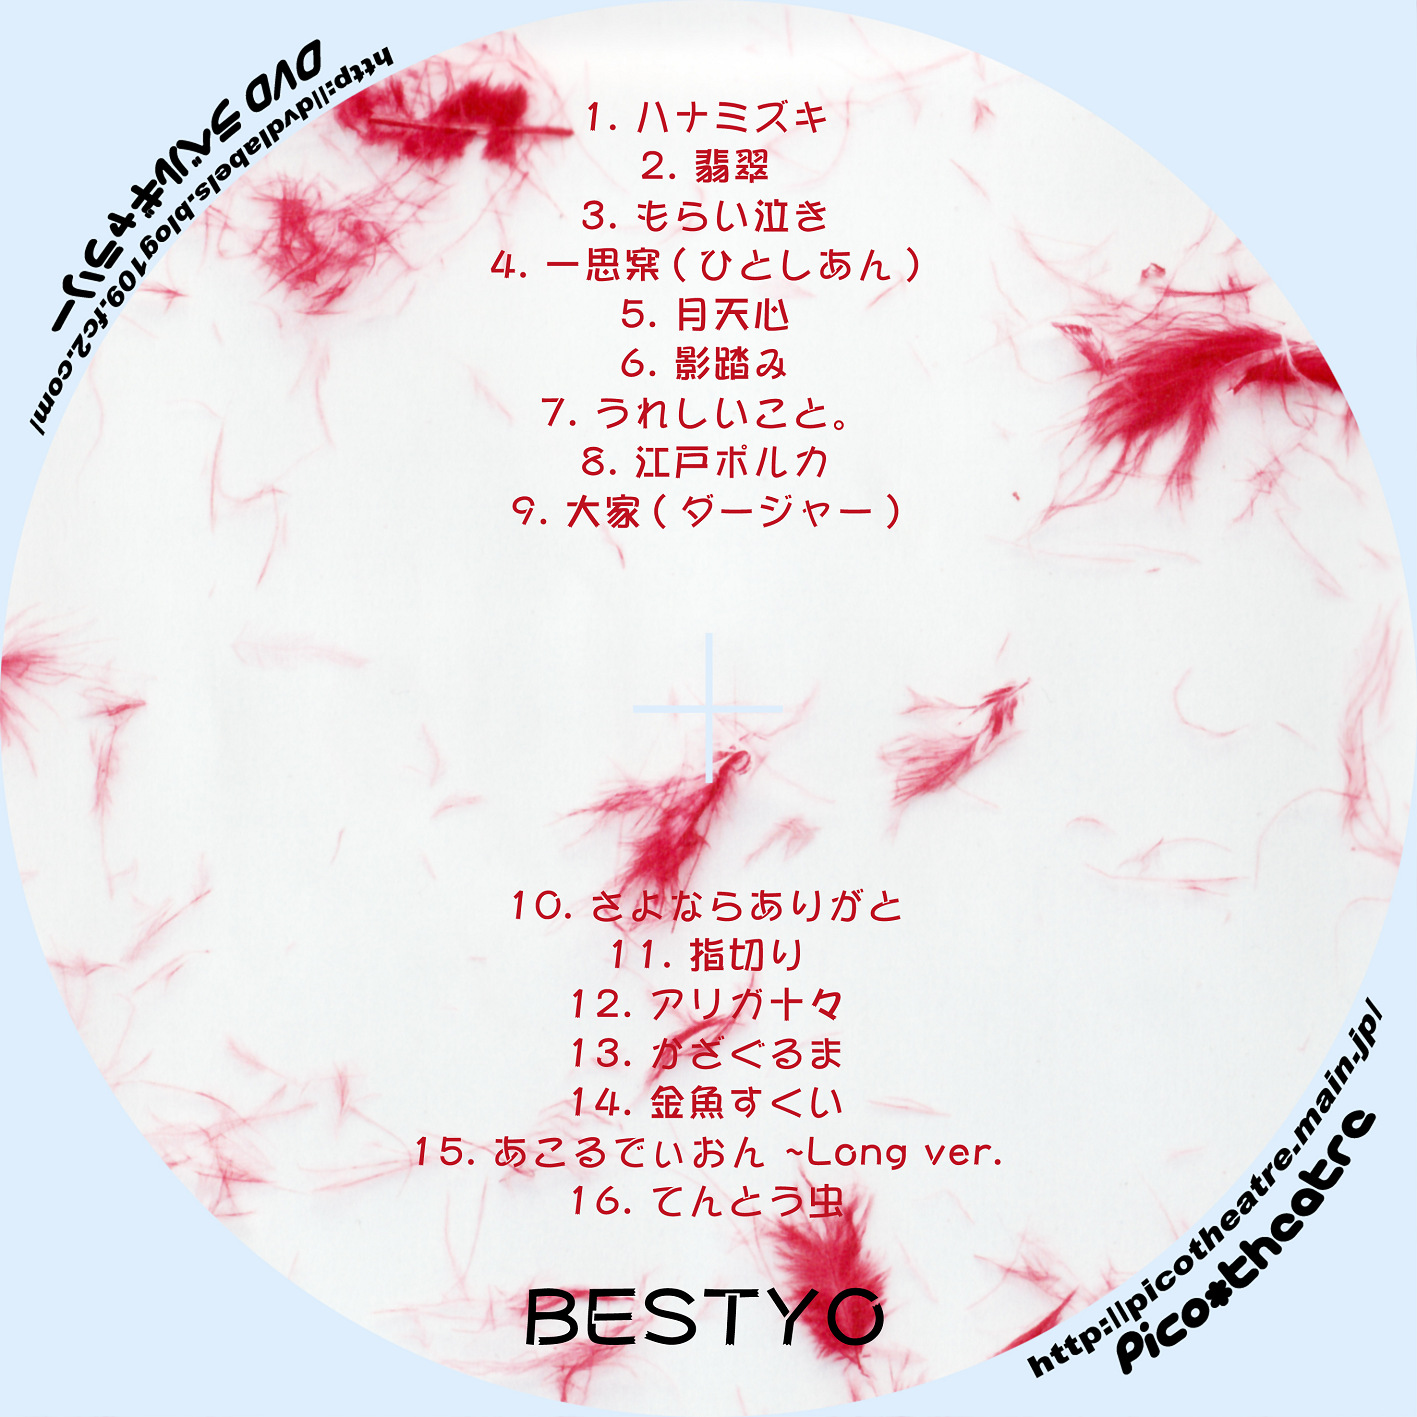 一青窈 BESTYO01 | DVDラベルギャラリー